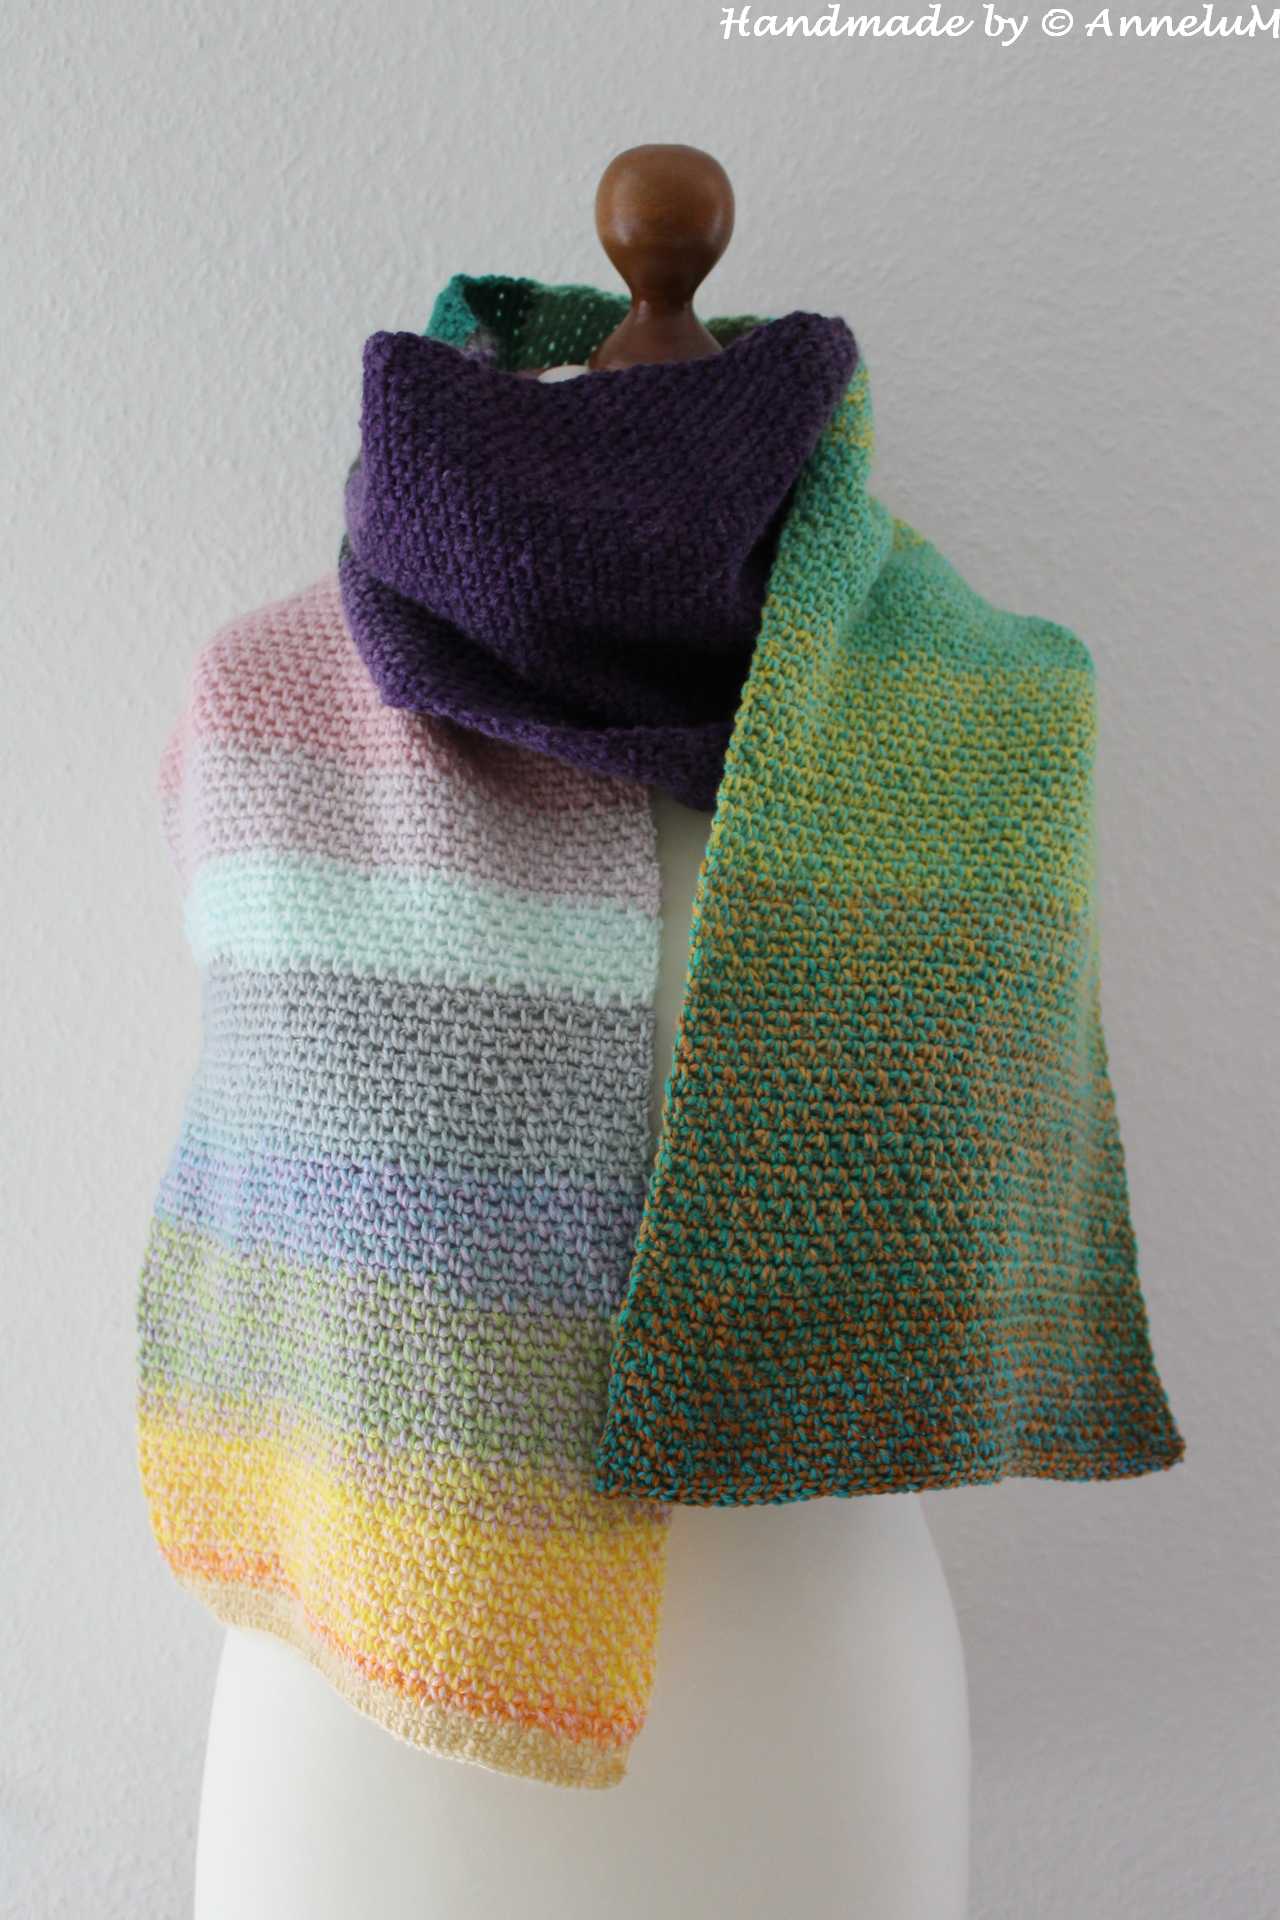 Moss-Stitch Schal Handmade by AnneluM